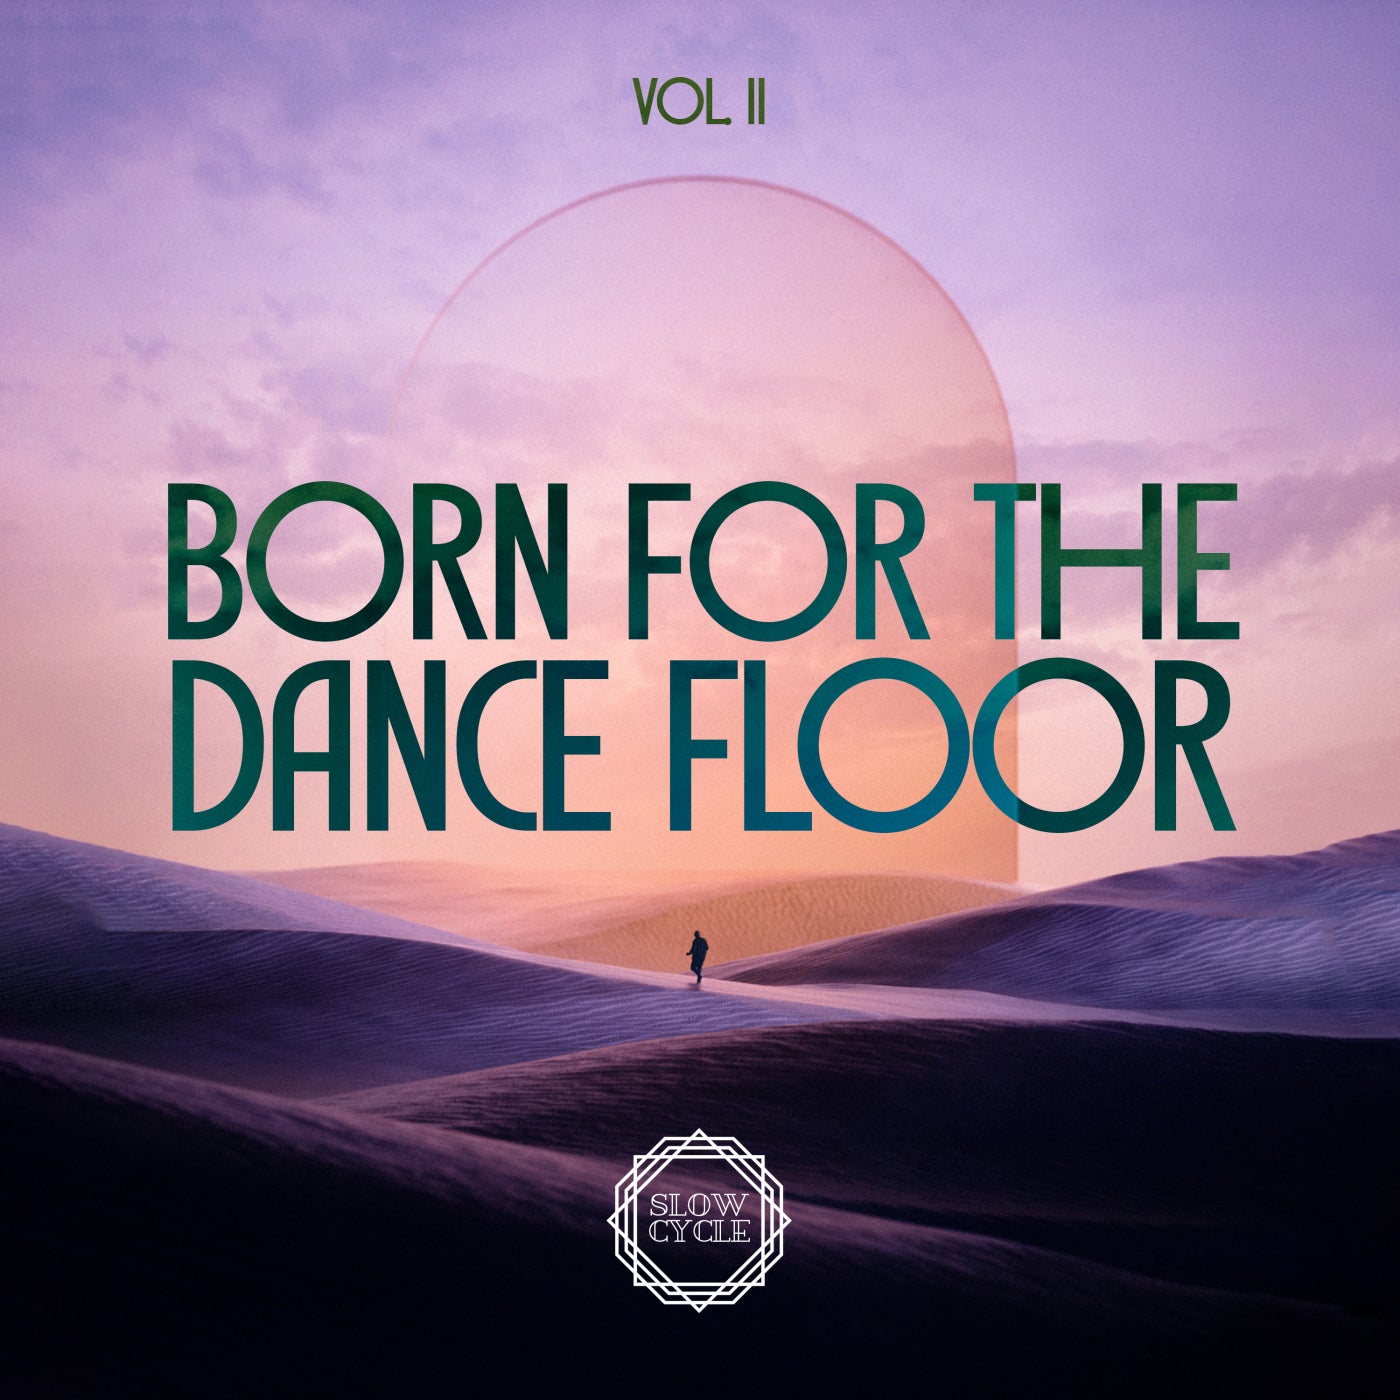 VA - Born for the Dance Floor Vol. II SLOW027